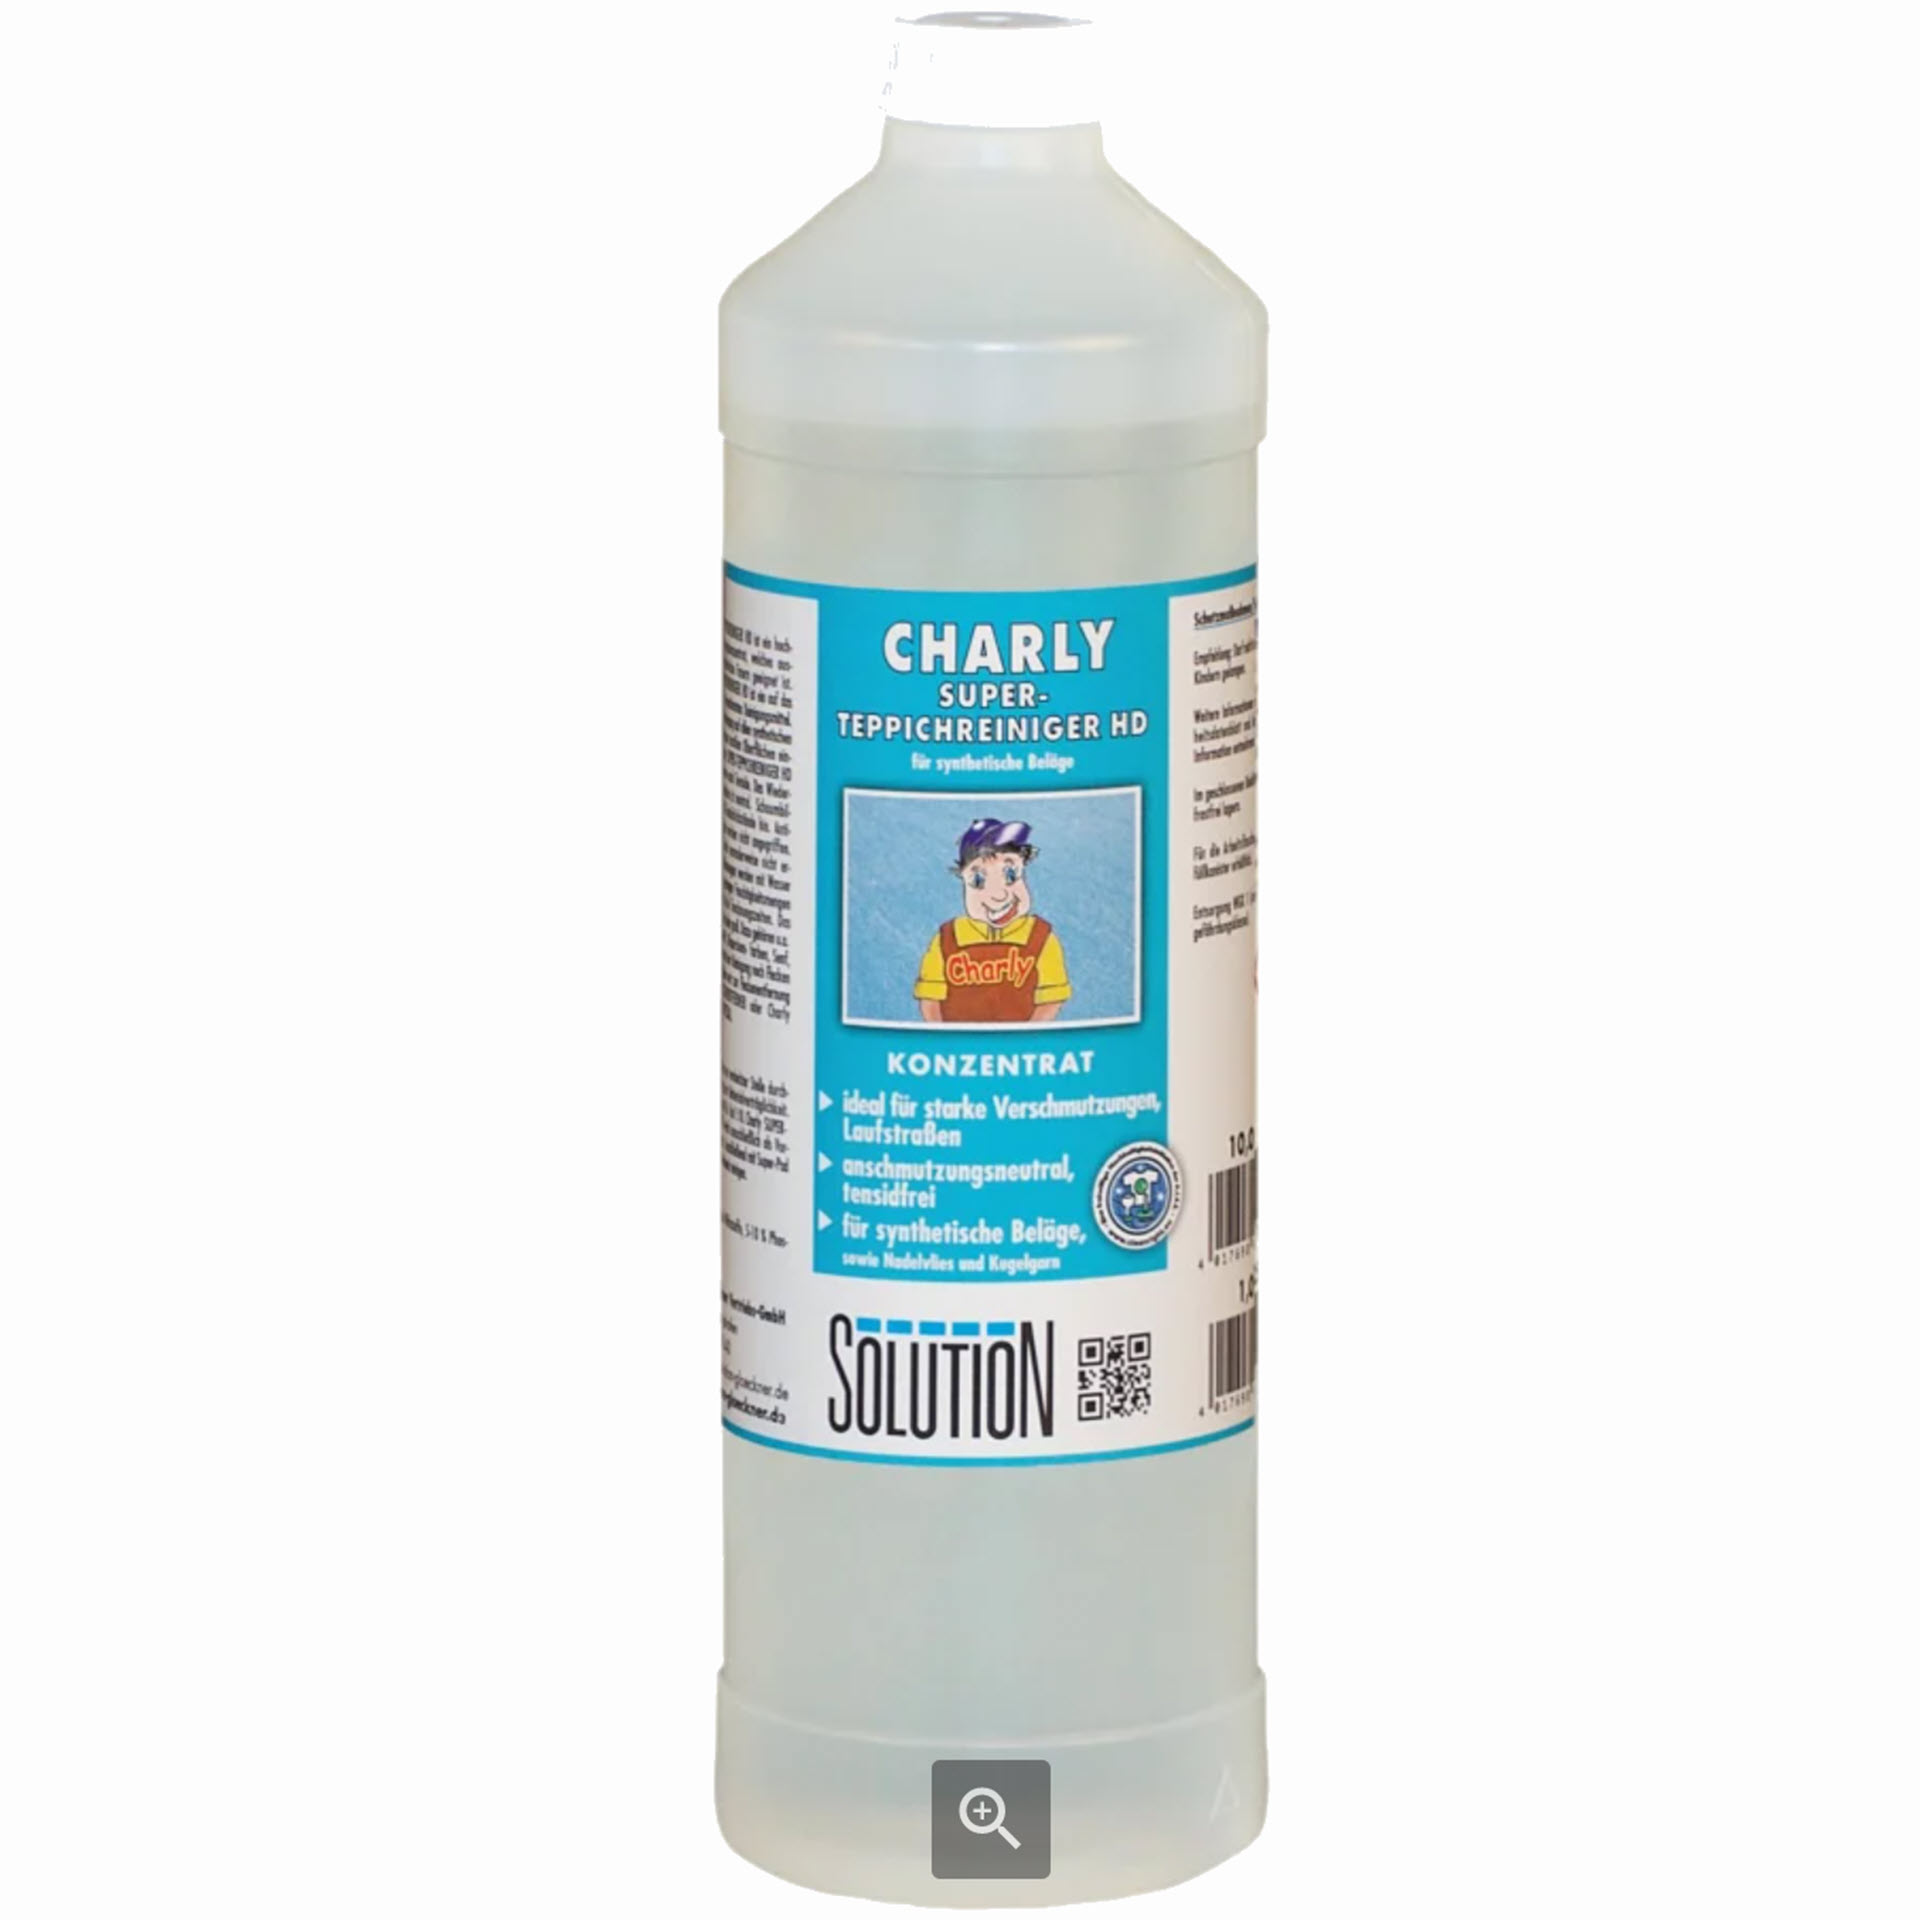 SOLUTION CHARLY Super-Teppichreiniger HD - 1 Liter Rundflasche